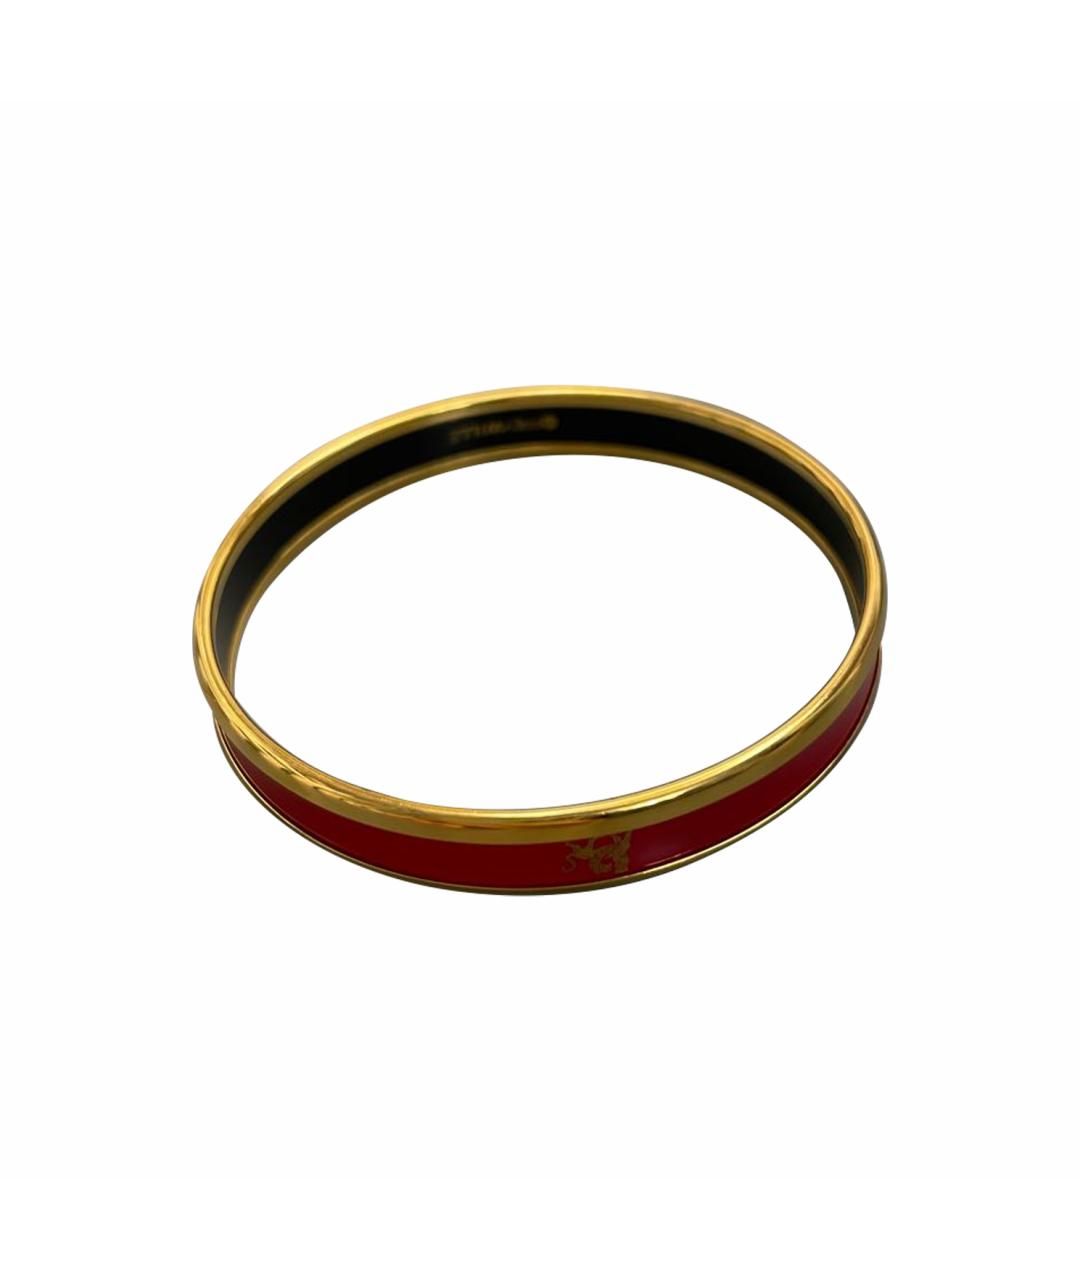 Frey Wille Красный позолоченный браслет, фото 1